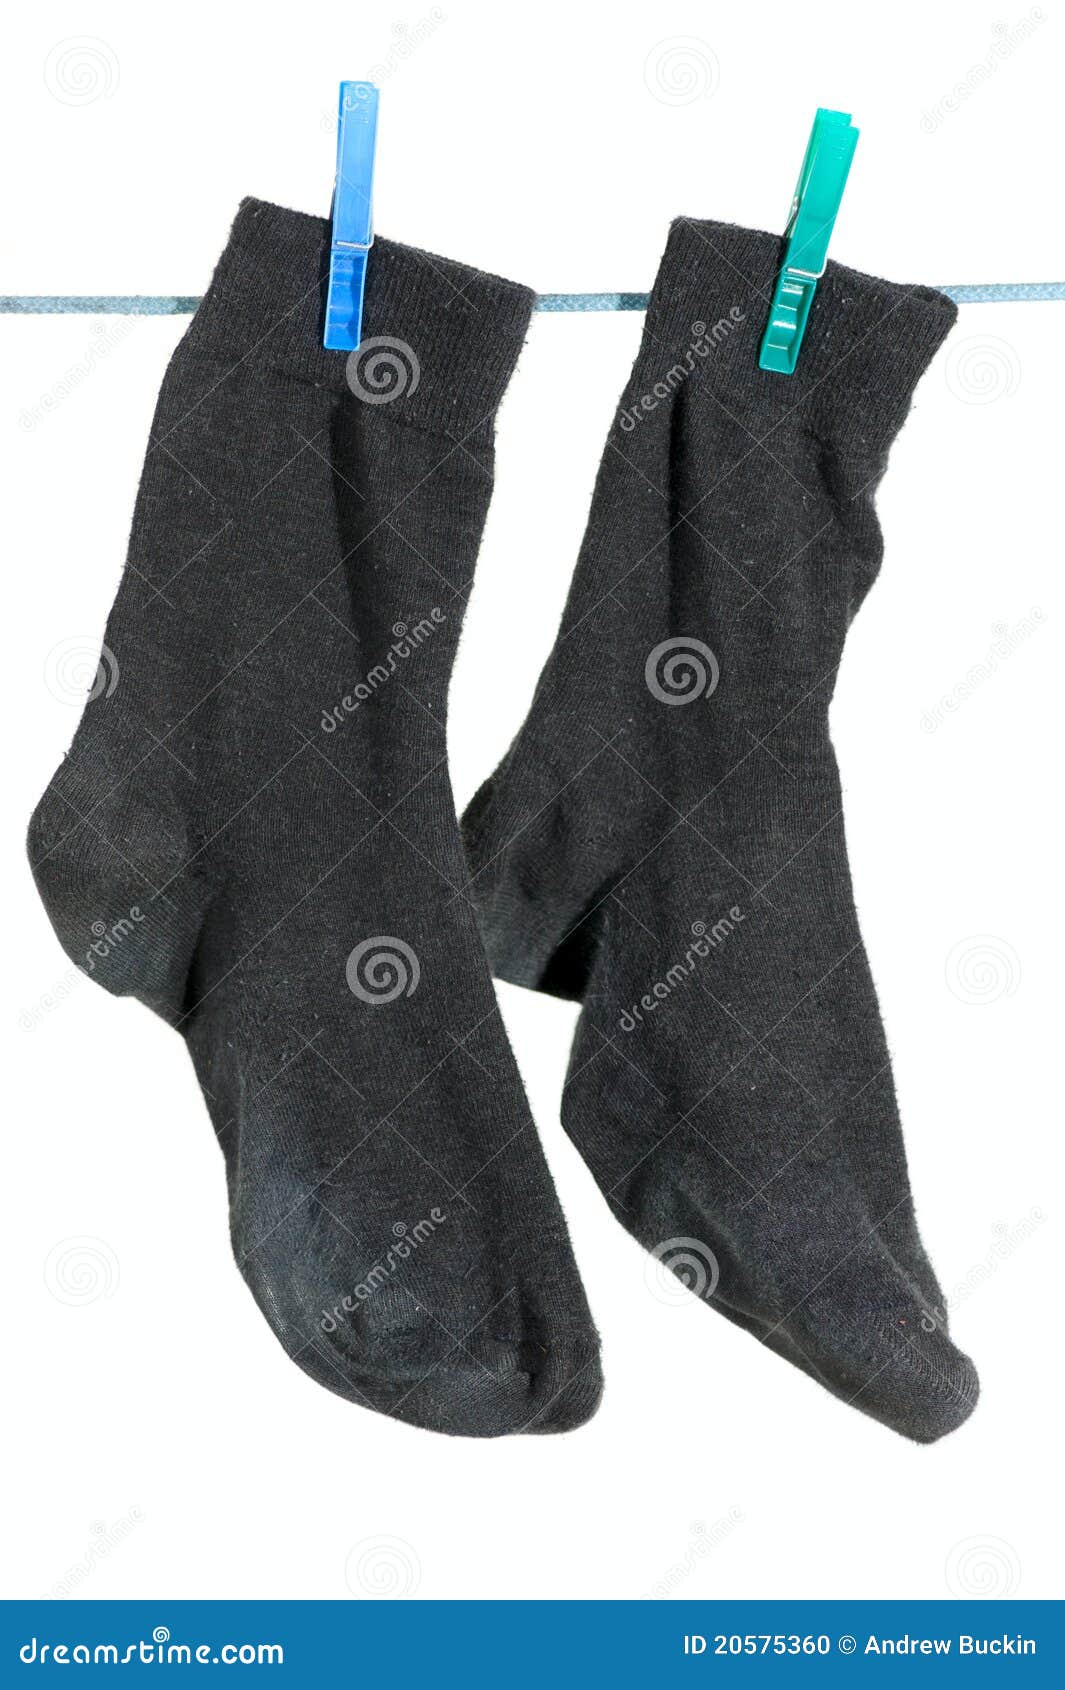 Black socks stock photo. Image of black, washing, clothespins - 20575360